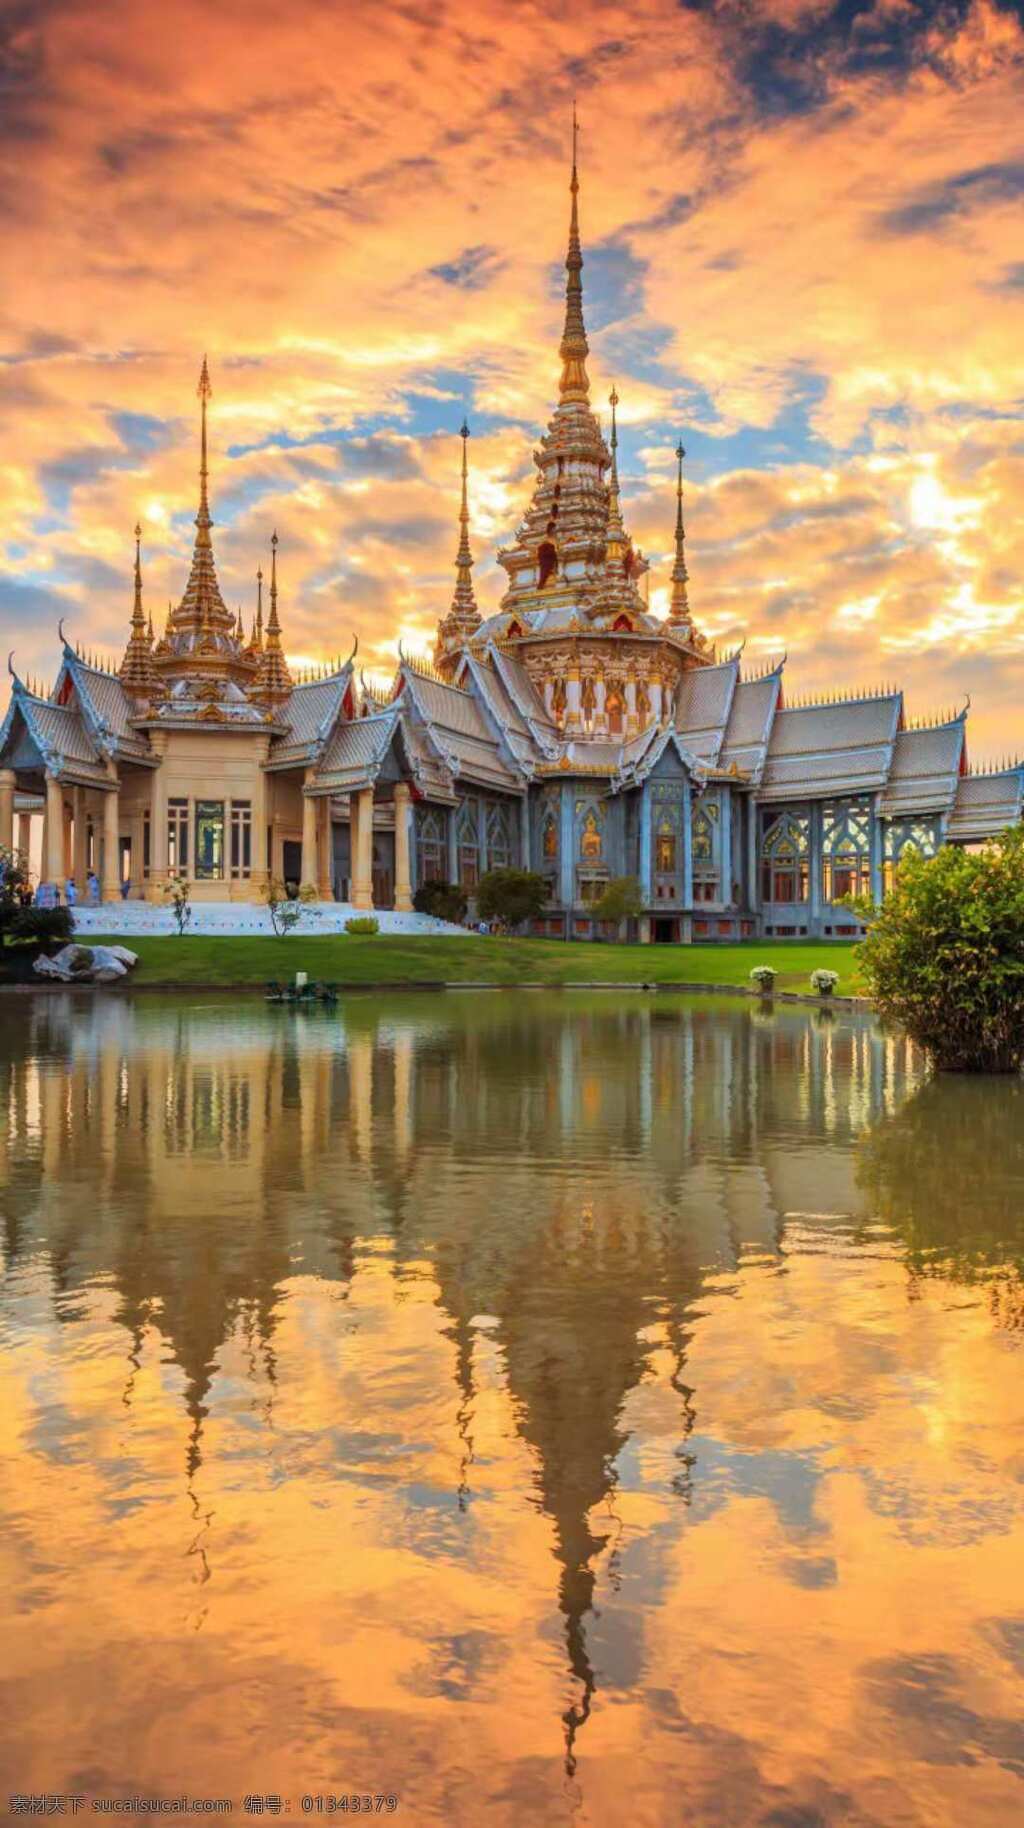 梦幻 般 奇特 建筑 彩云下的建筑 碧水边的建筑 春天的建筑 泰国建筑 建筑旅游 旅游摄影 国外旅游